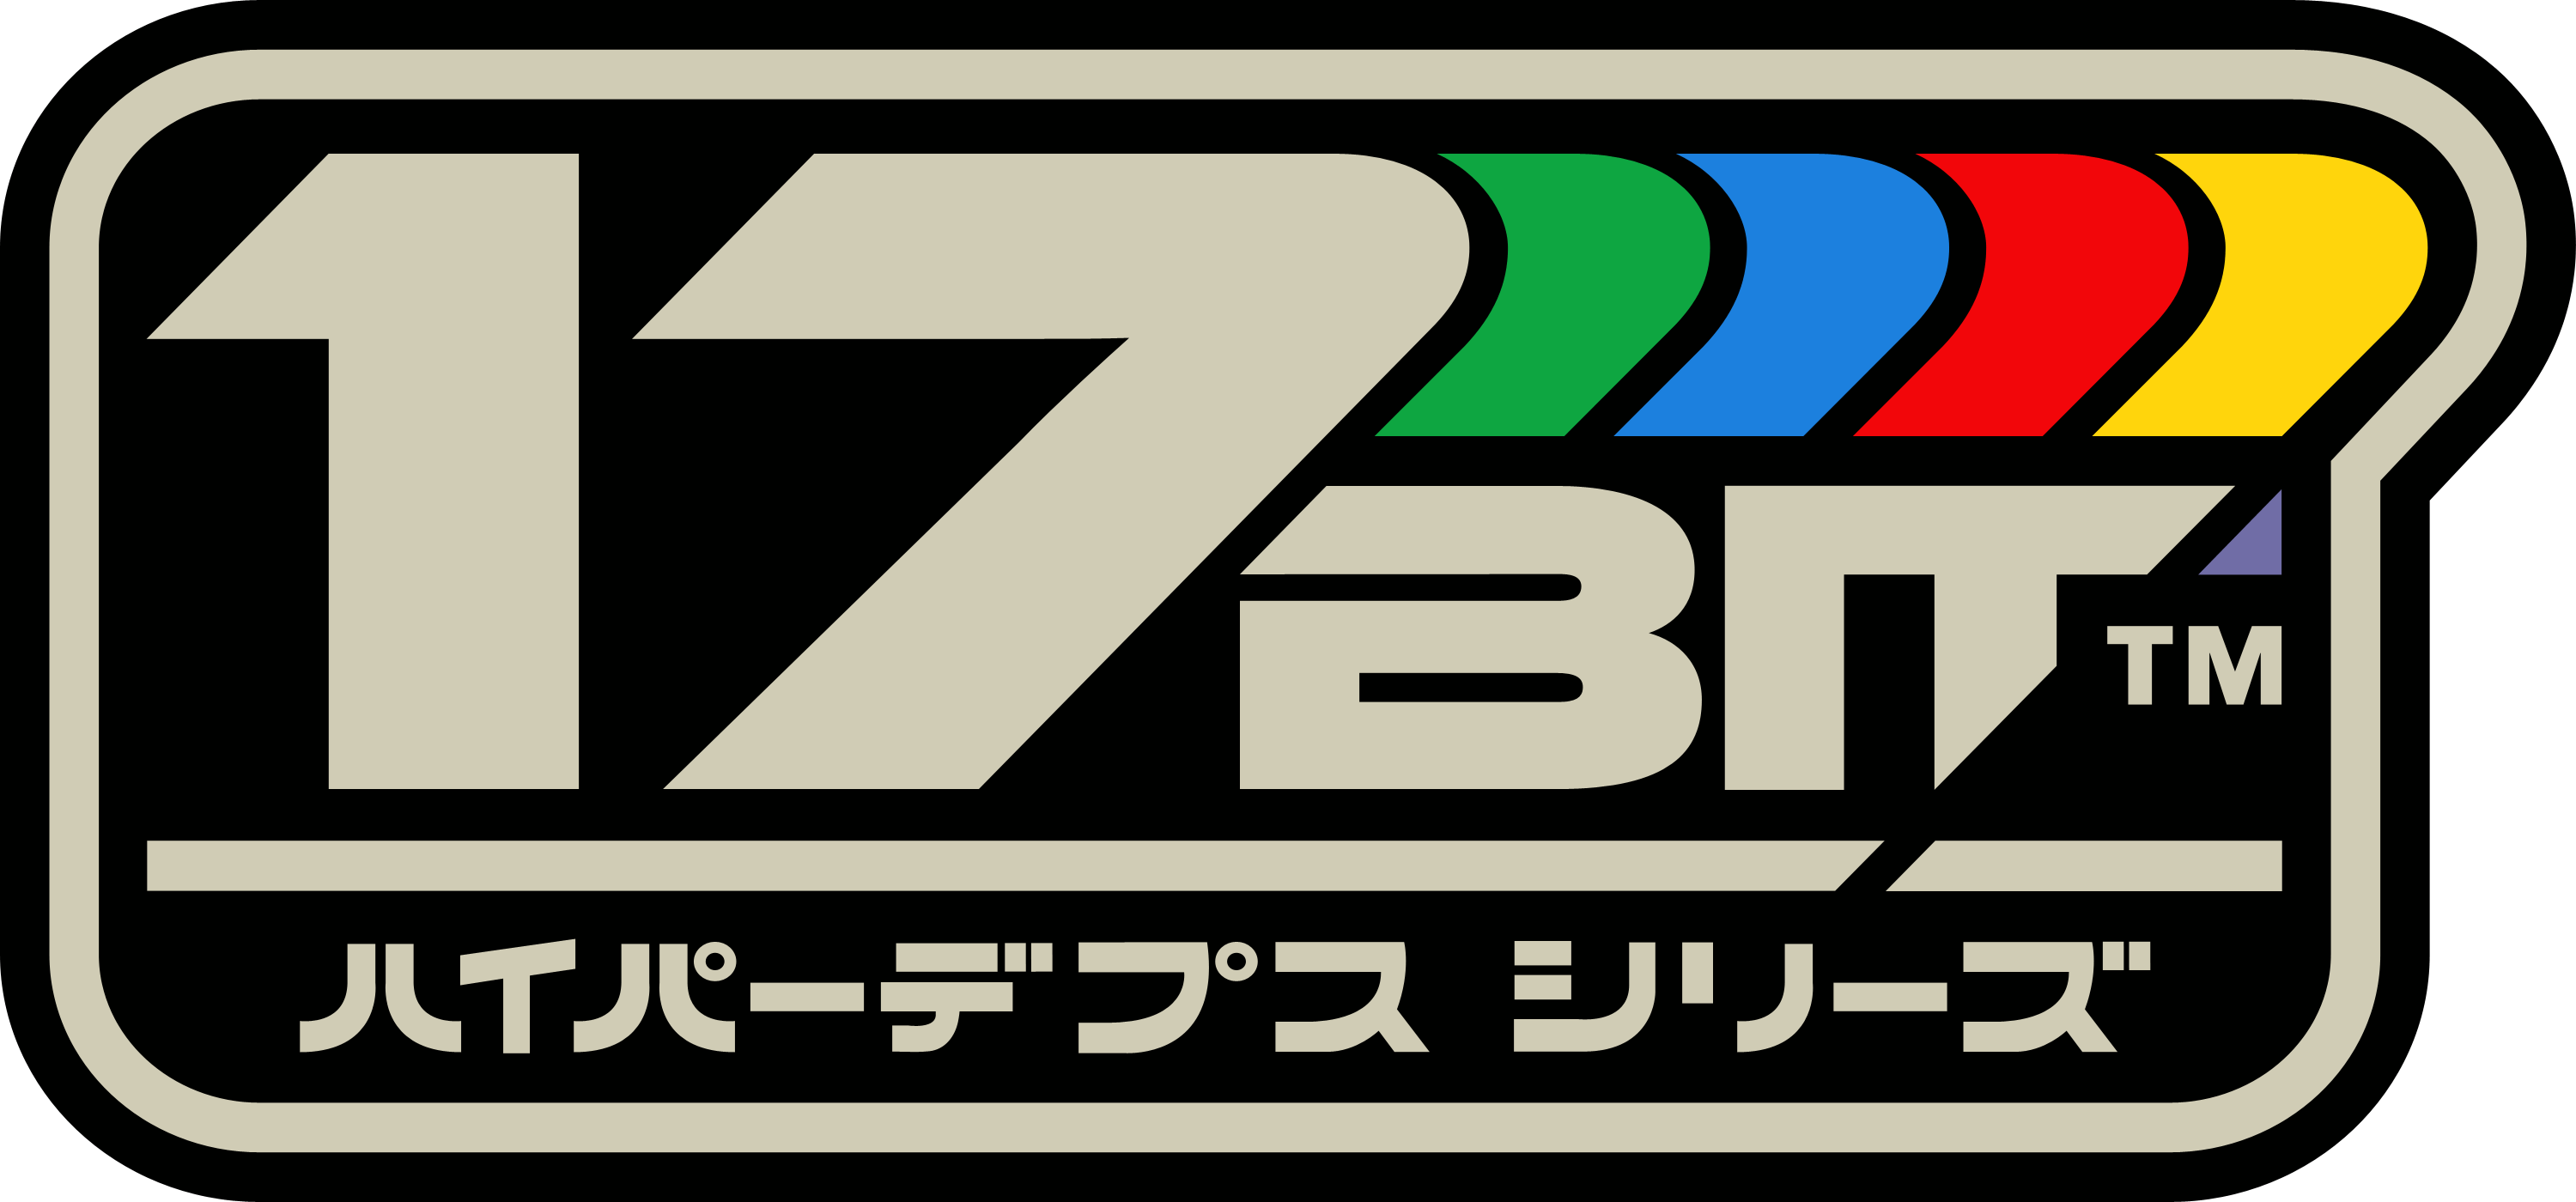 17 Logo - 17 BIT Logo Rgb.png